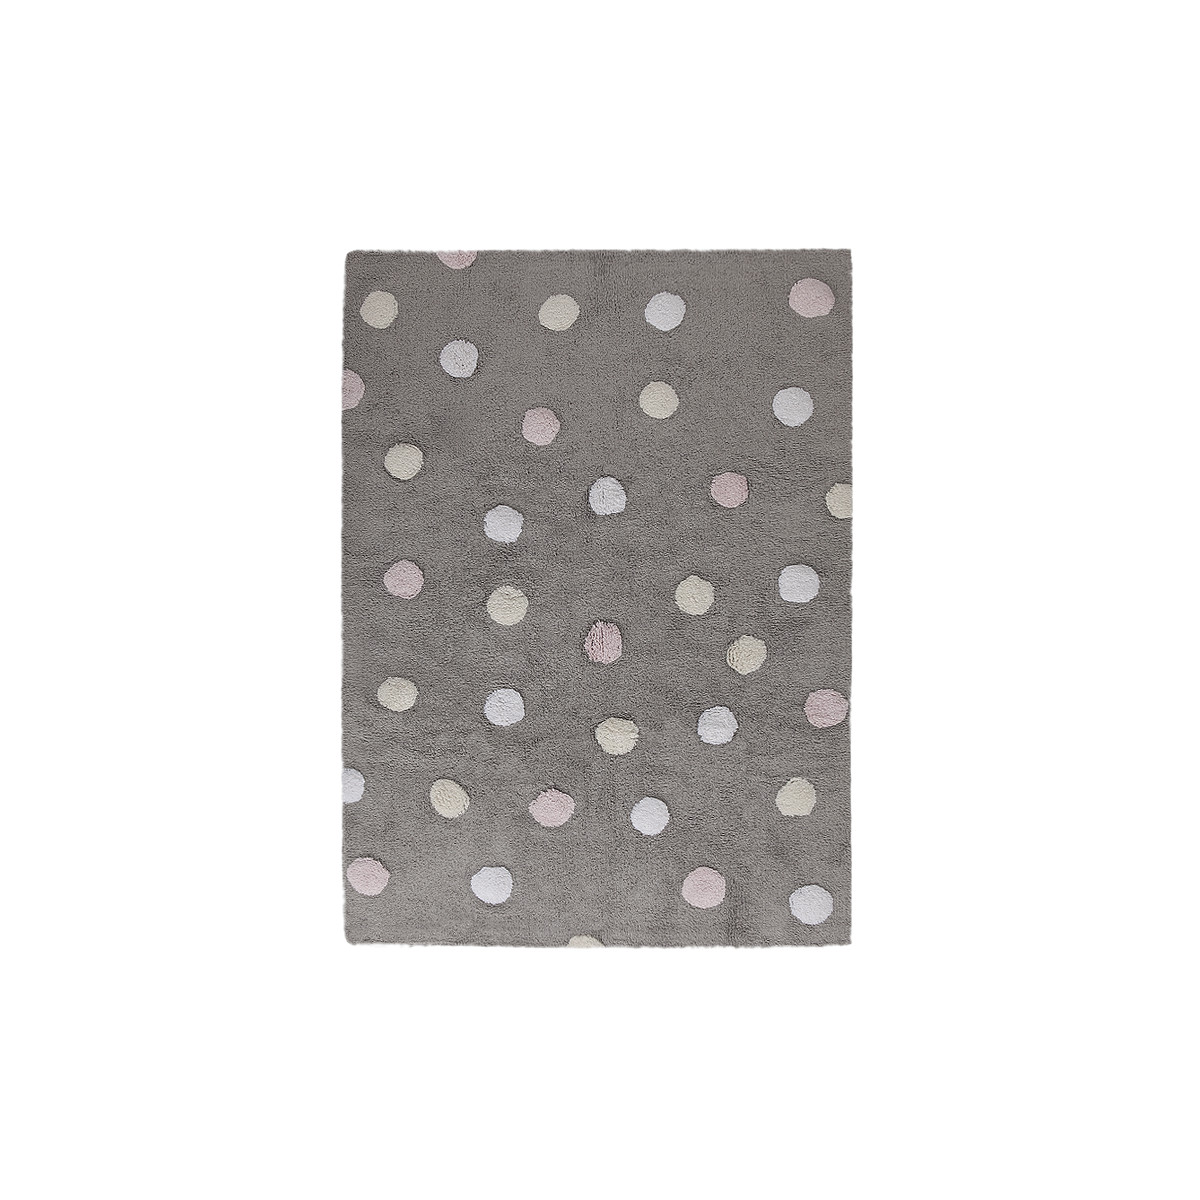 Pro zvířata: Pratelný koberec Tricolor Polka Dots Grey-Pink